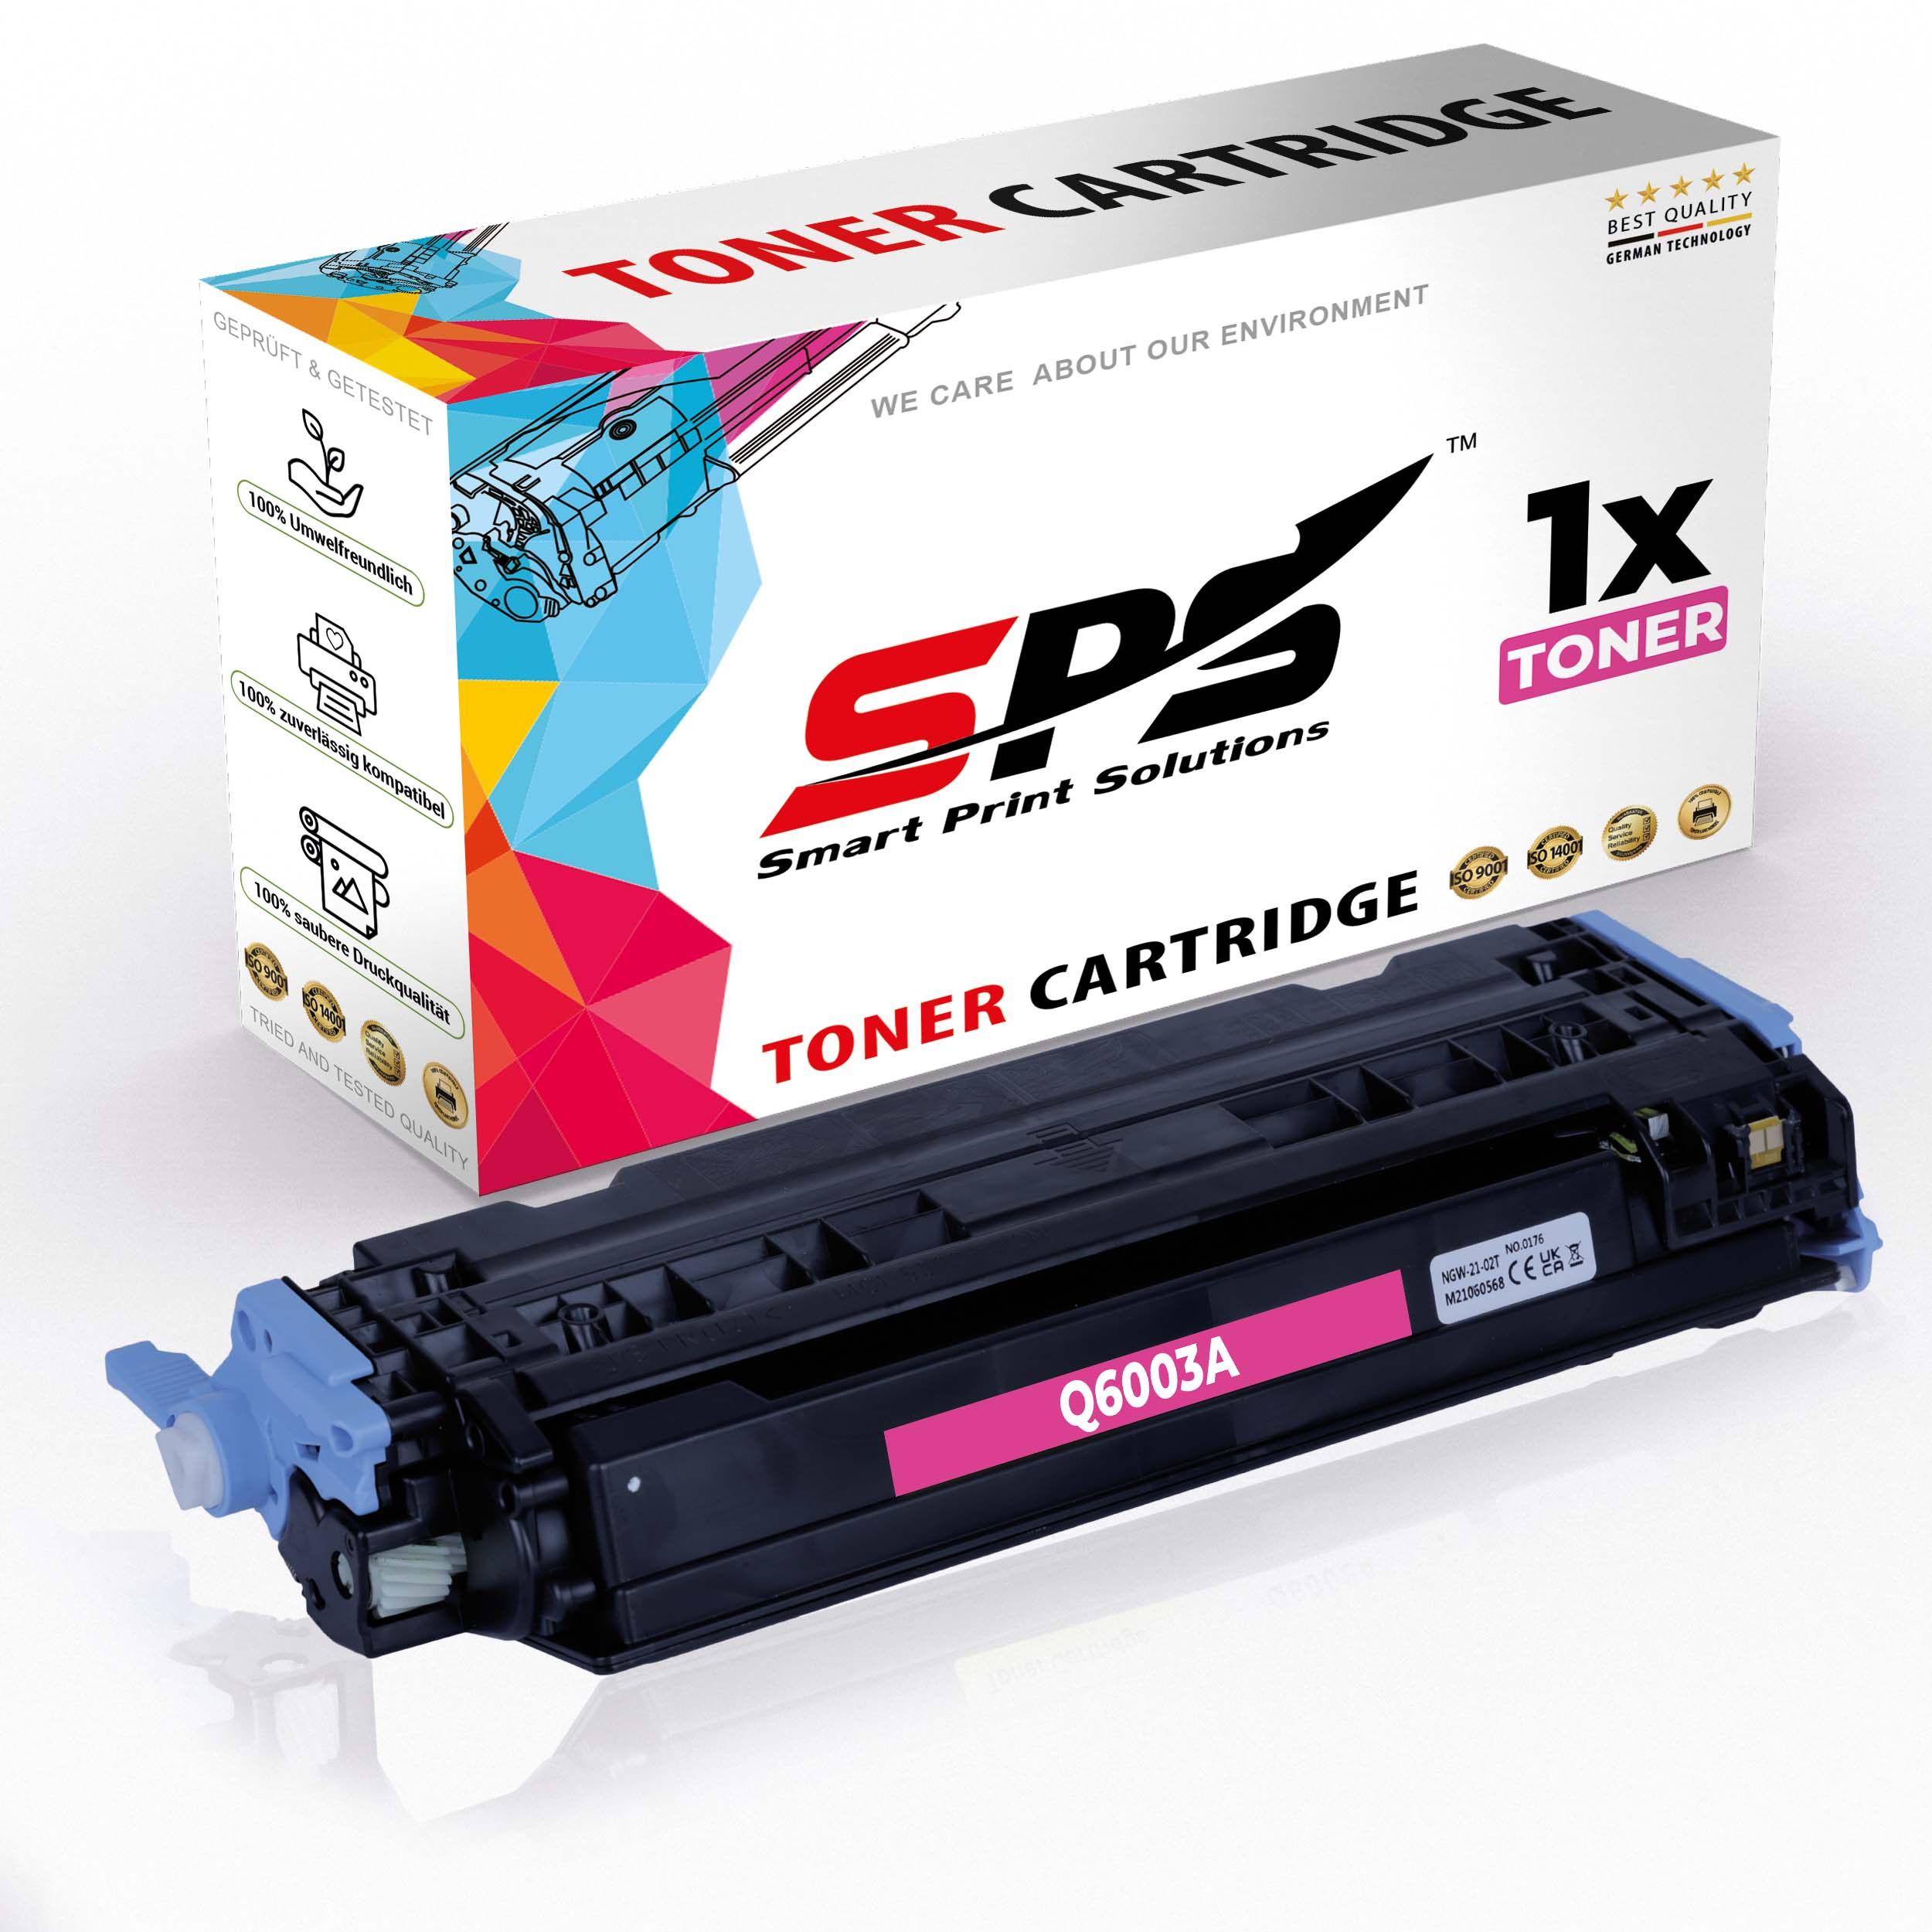 SPS S-8228 Toner Laserjet (Q6003A Color 2605DN) Magenta 124A 